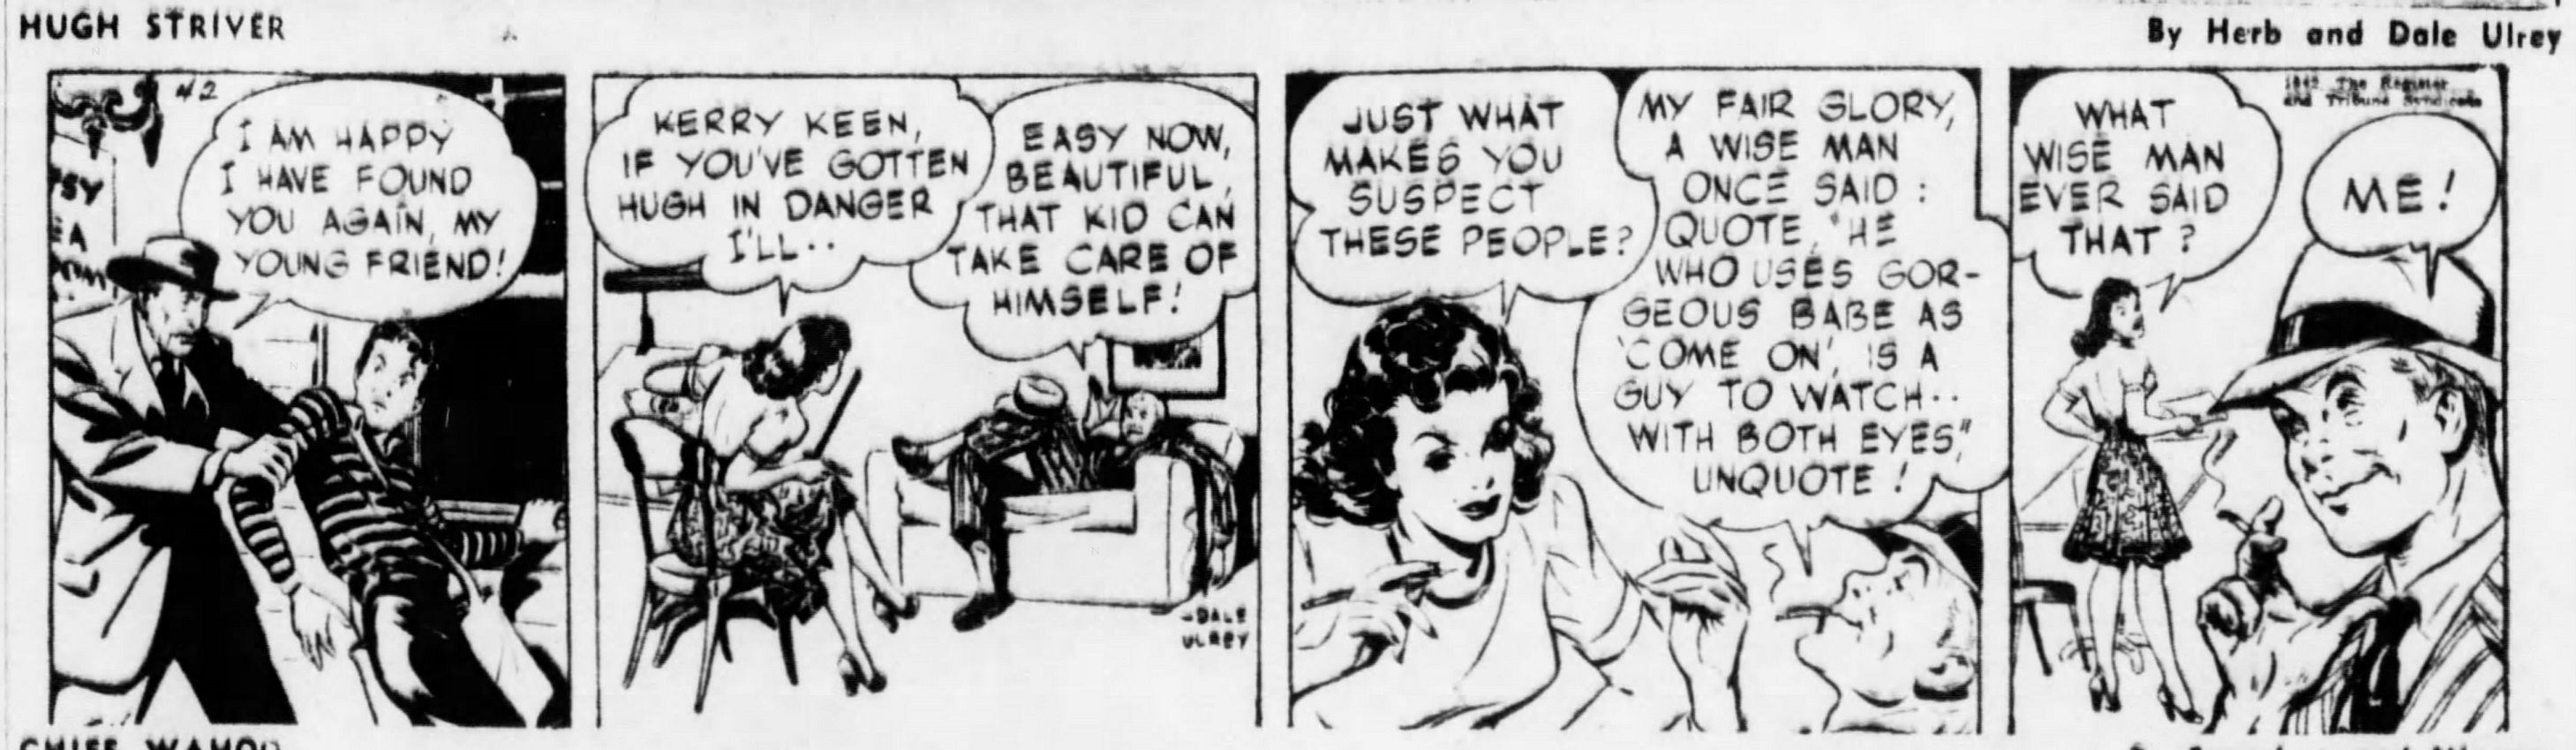 The_Brooklyn_Daily_Eagle_Sat__Nov_21__1942_(9).jpg